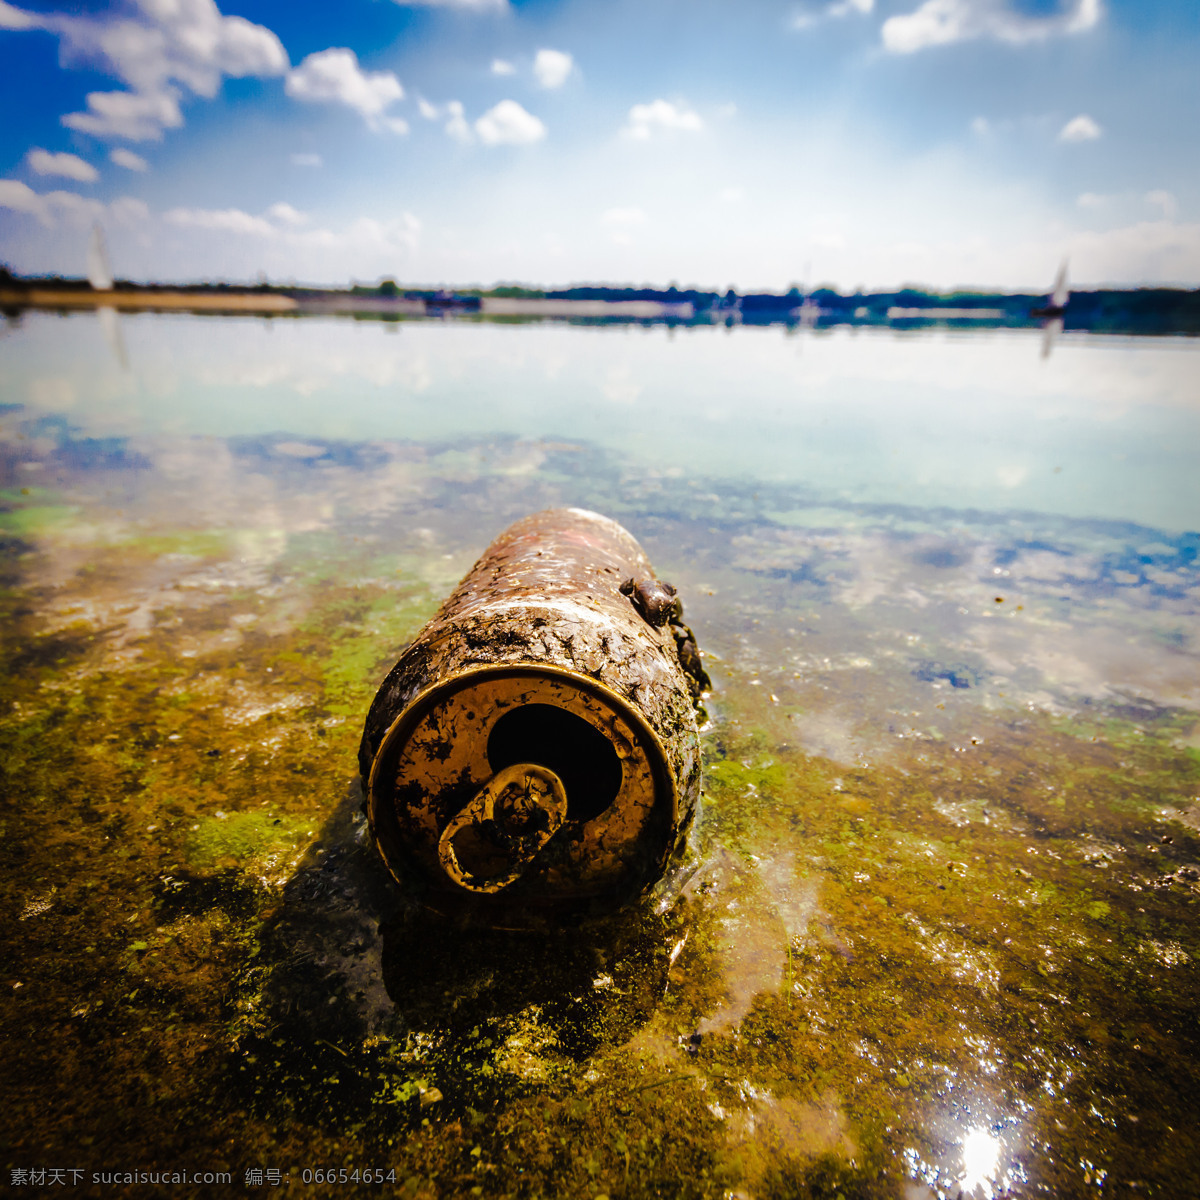 环境污染 废弃塑料桶 水污染 污水 生活百科 自然风景 自然景观